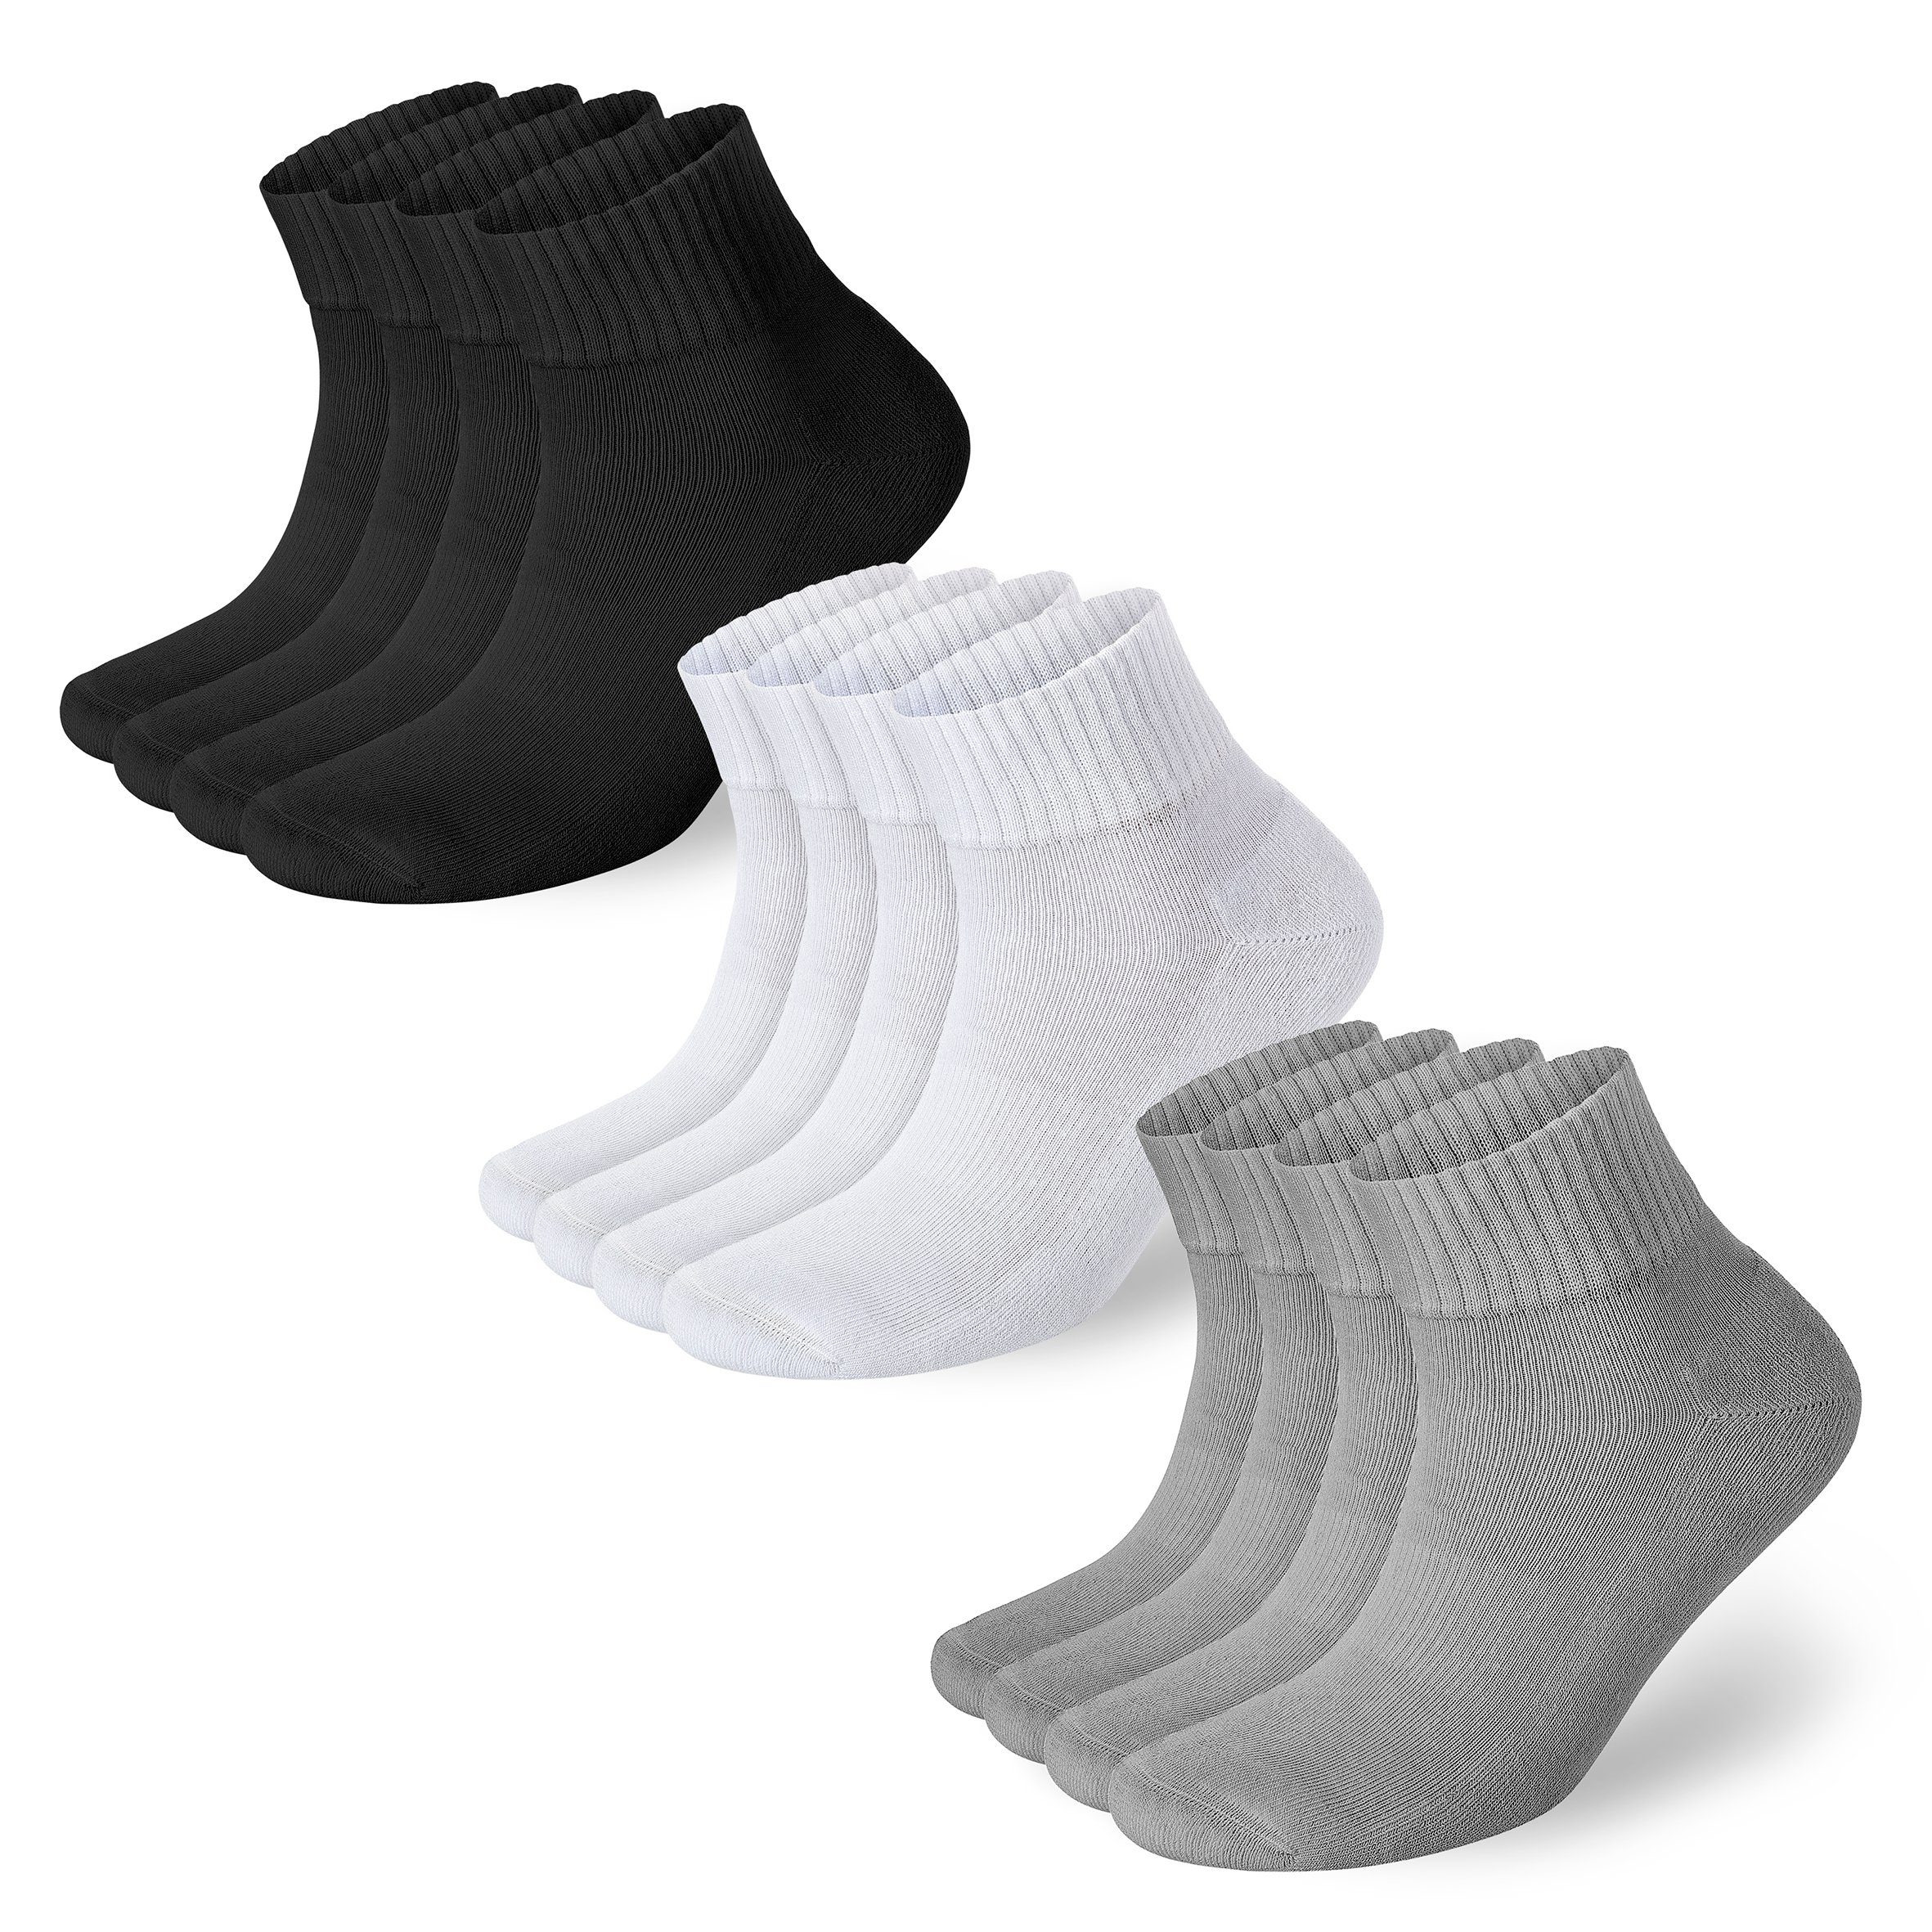 NAHLE Arbeitssocken 24 Paar Bio-Baumwolle Sneaker Socken für Damen & Herren Sportsocken (24-Paar) atmungsaktiv - gepolsterte Ferse und Sohle - kein Schwitzen Gemischt(8x Schwarz + 8x Grau + 8x Weiß)